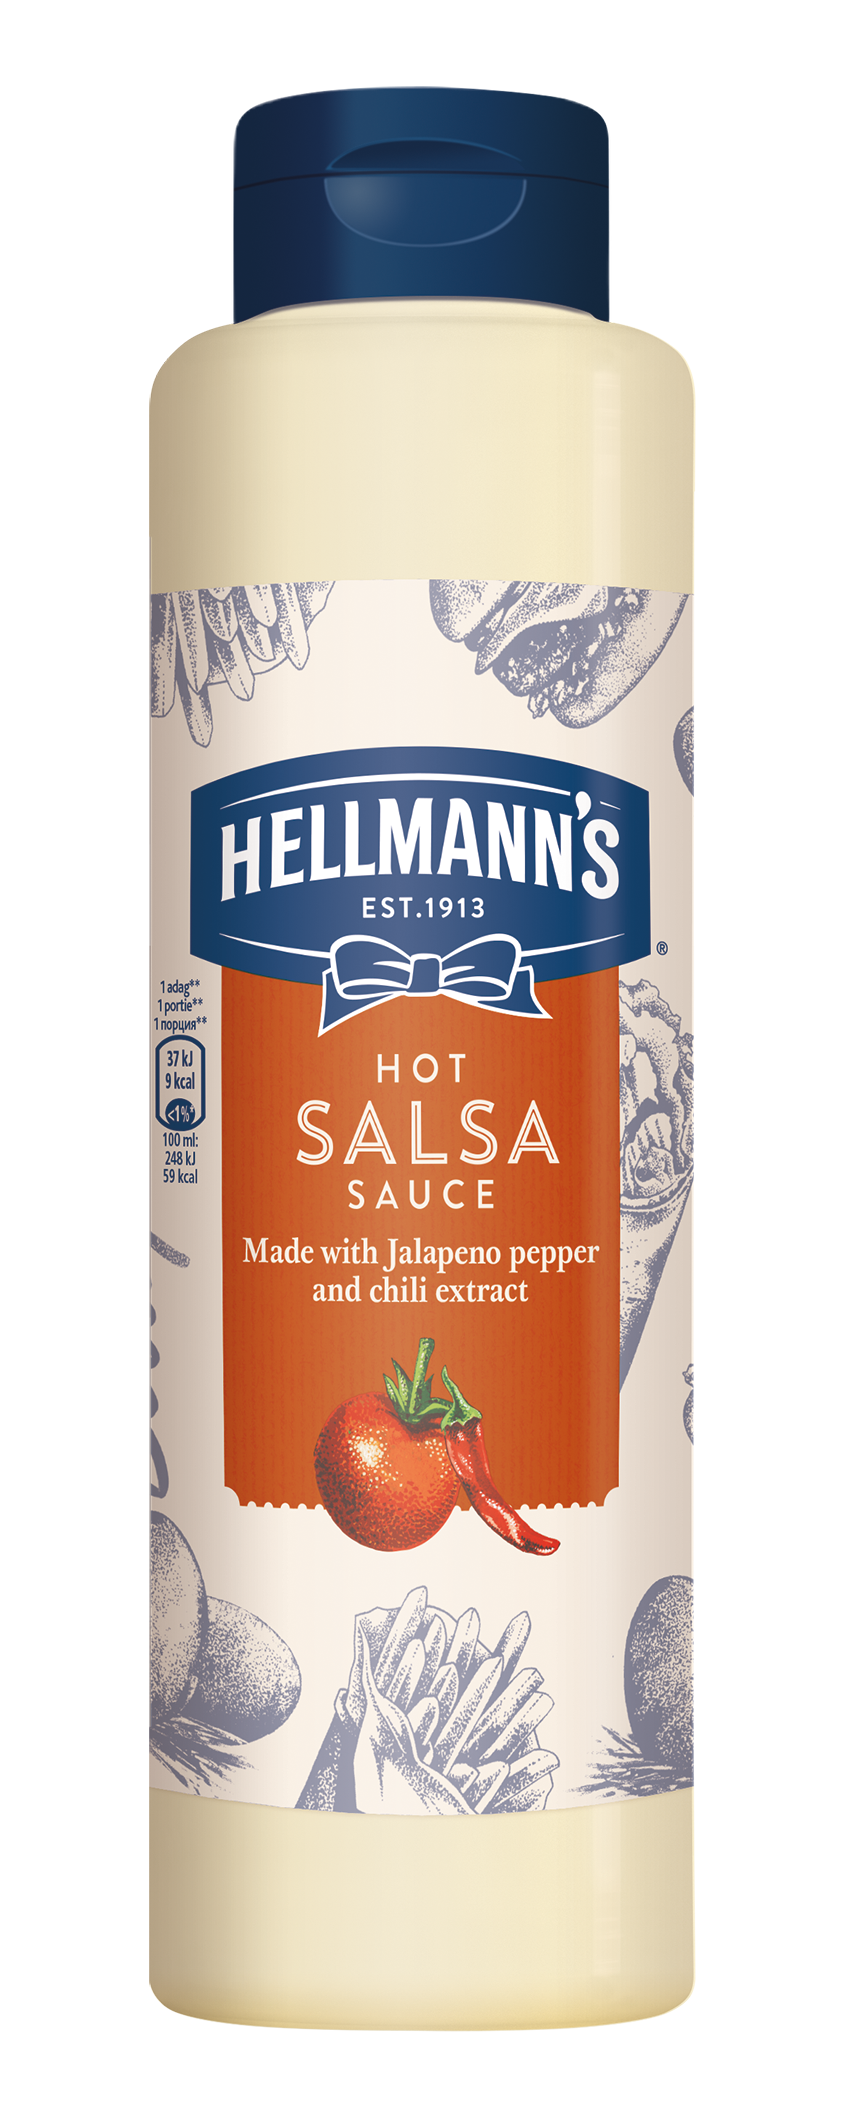 HELLMANN'S Csípős Salsa szósz 850 ml -  Minőségi márkájú termék felszolgálása pozitív benyomást kelt a vendégekben.